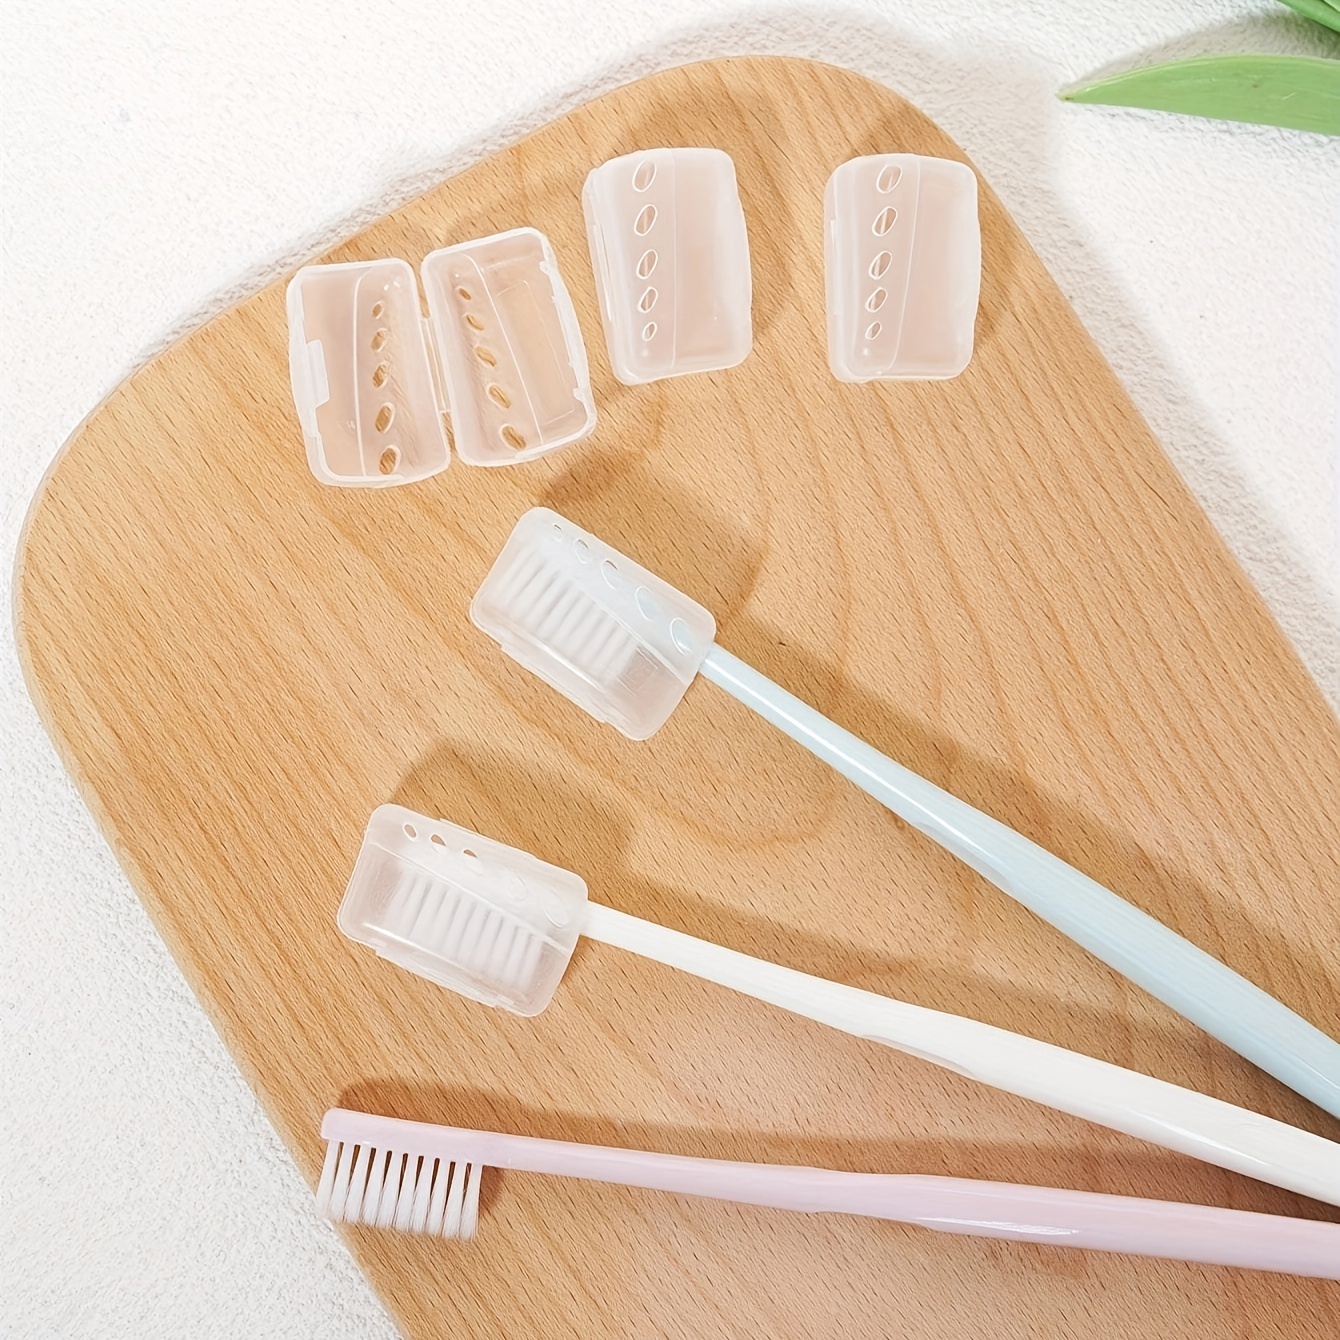 Funda protectora de plástico para cabezales de cepillo de dientes  eléctricos de viaje, compatible con cabezales de cepillo de dientes de  repuesto